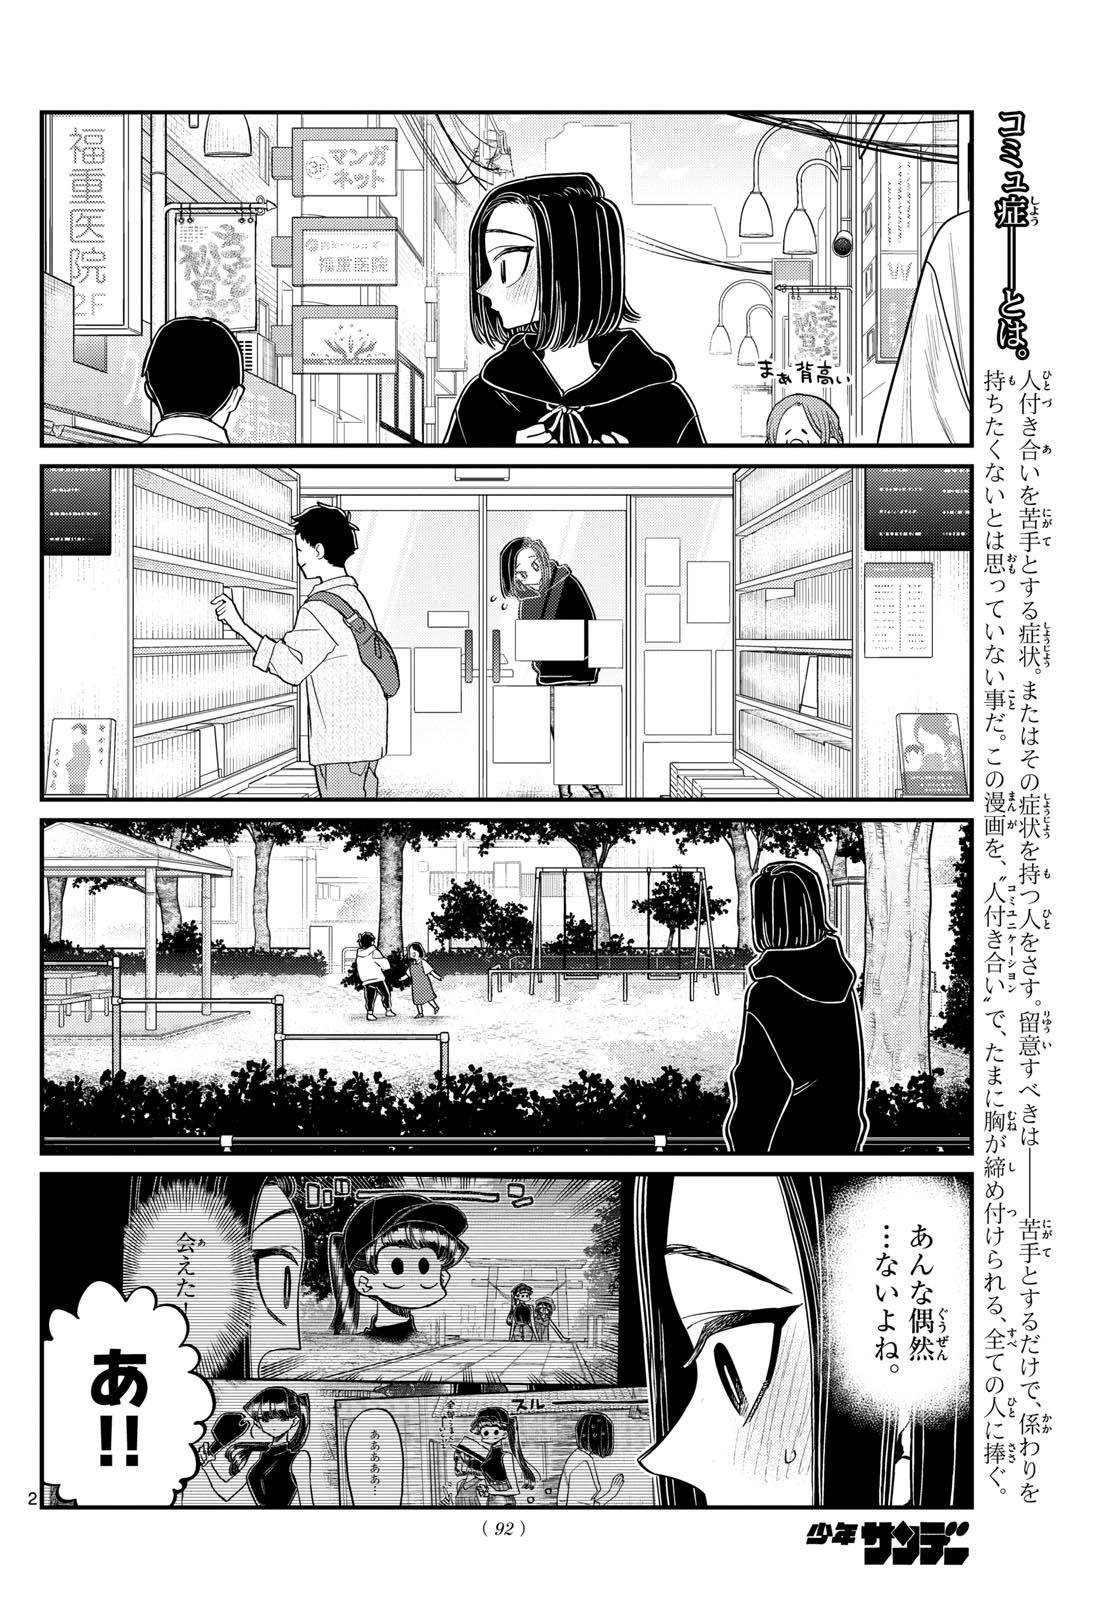 Komi-san wa Komyushou Desu - Chapter 436 - Page 2